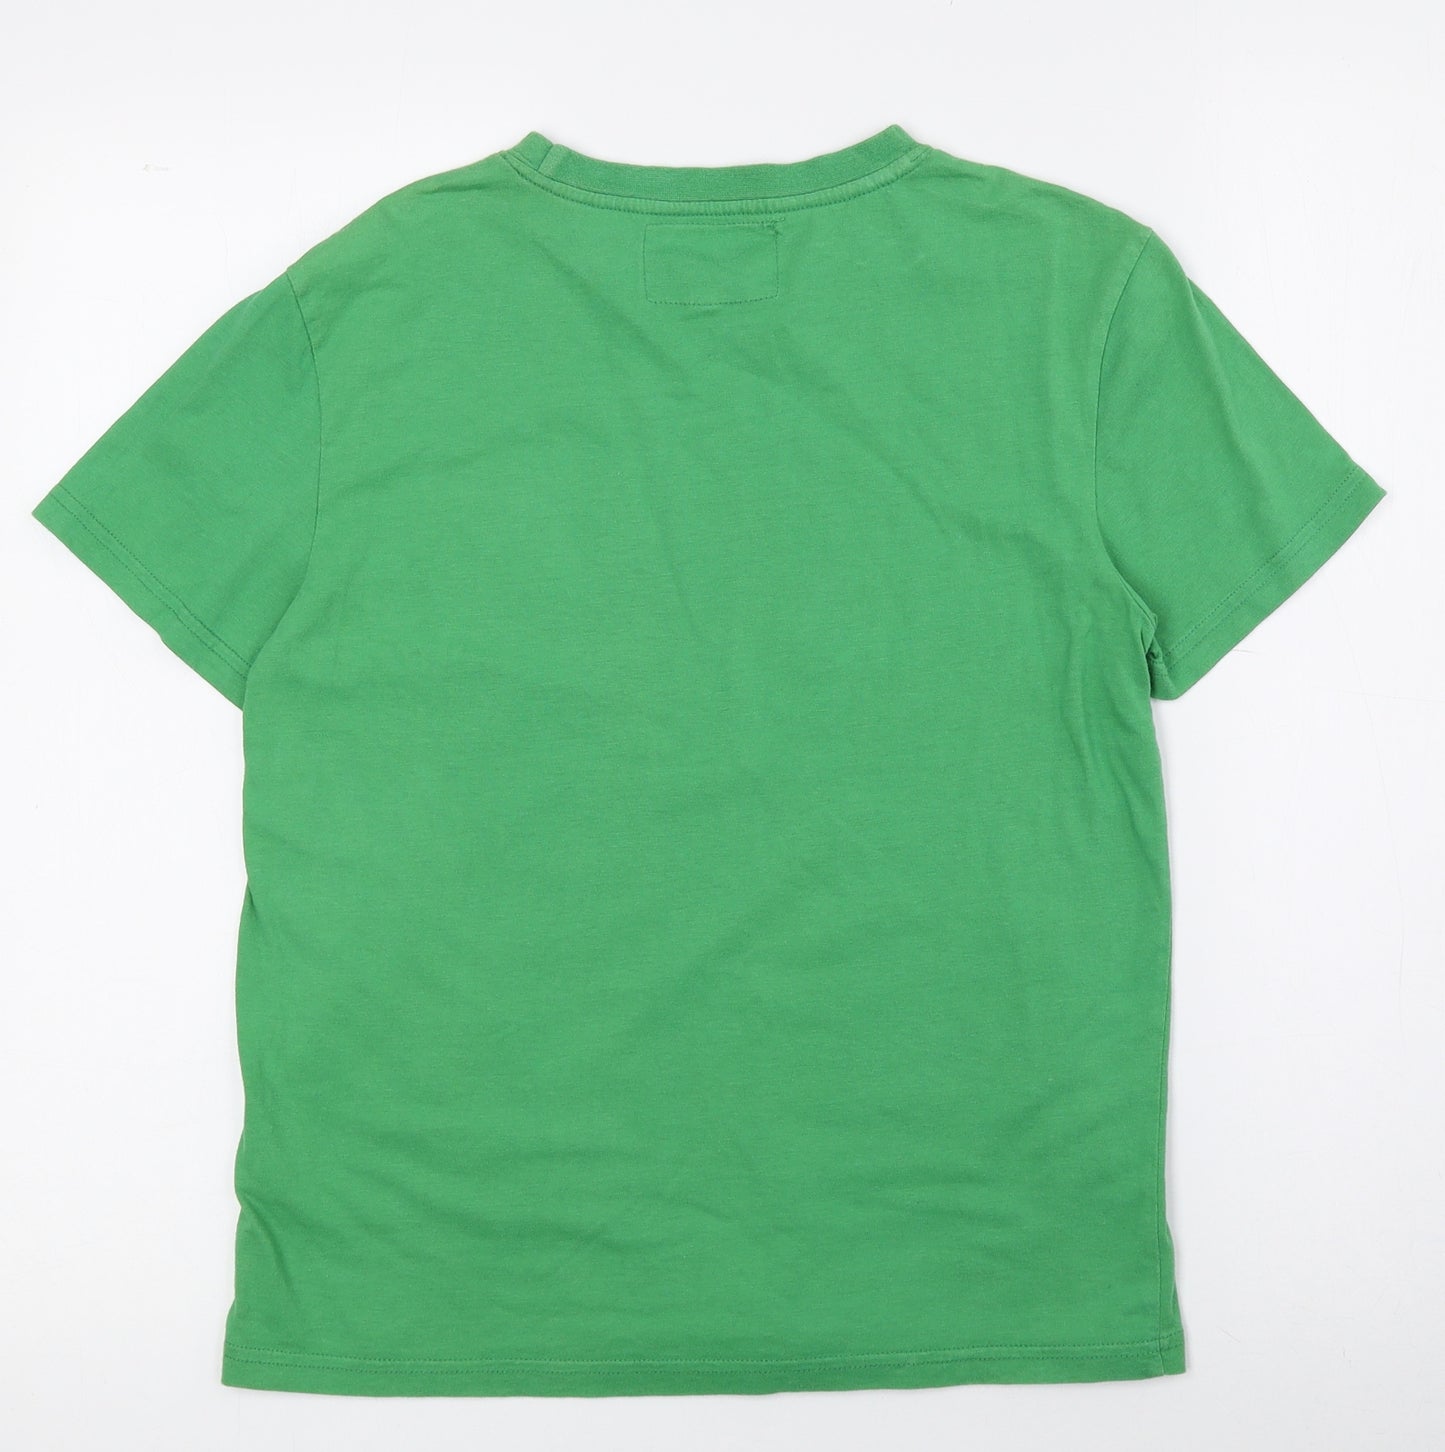 Kangaroo Boys Green Cotton Basic T-Shirt Size 9 Years Crew Neck Pullover - Kangaroos